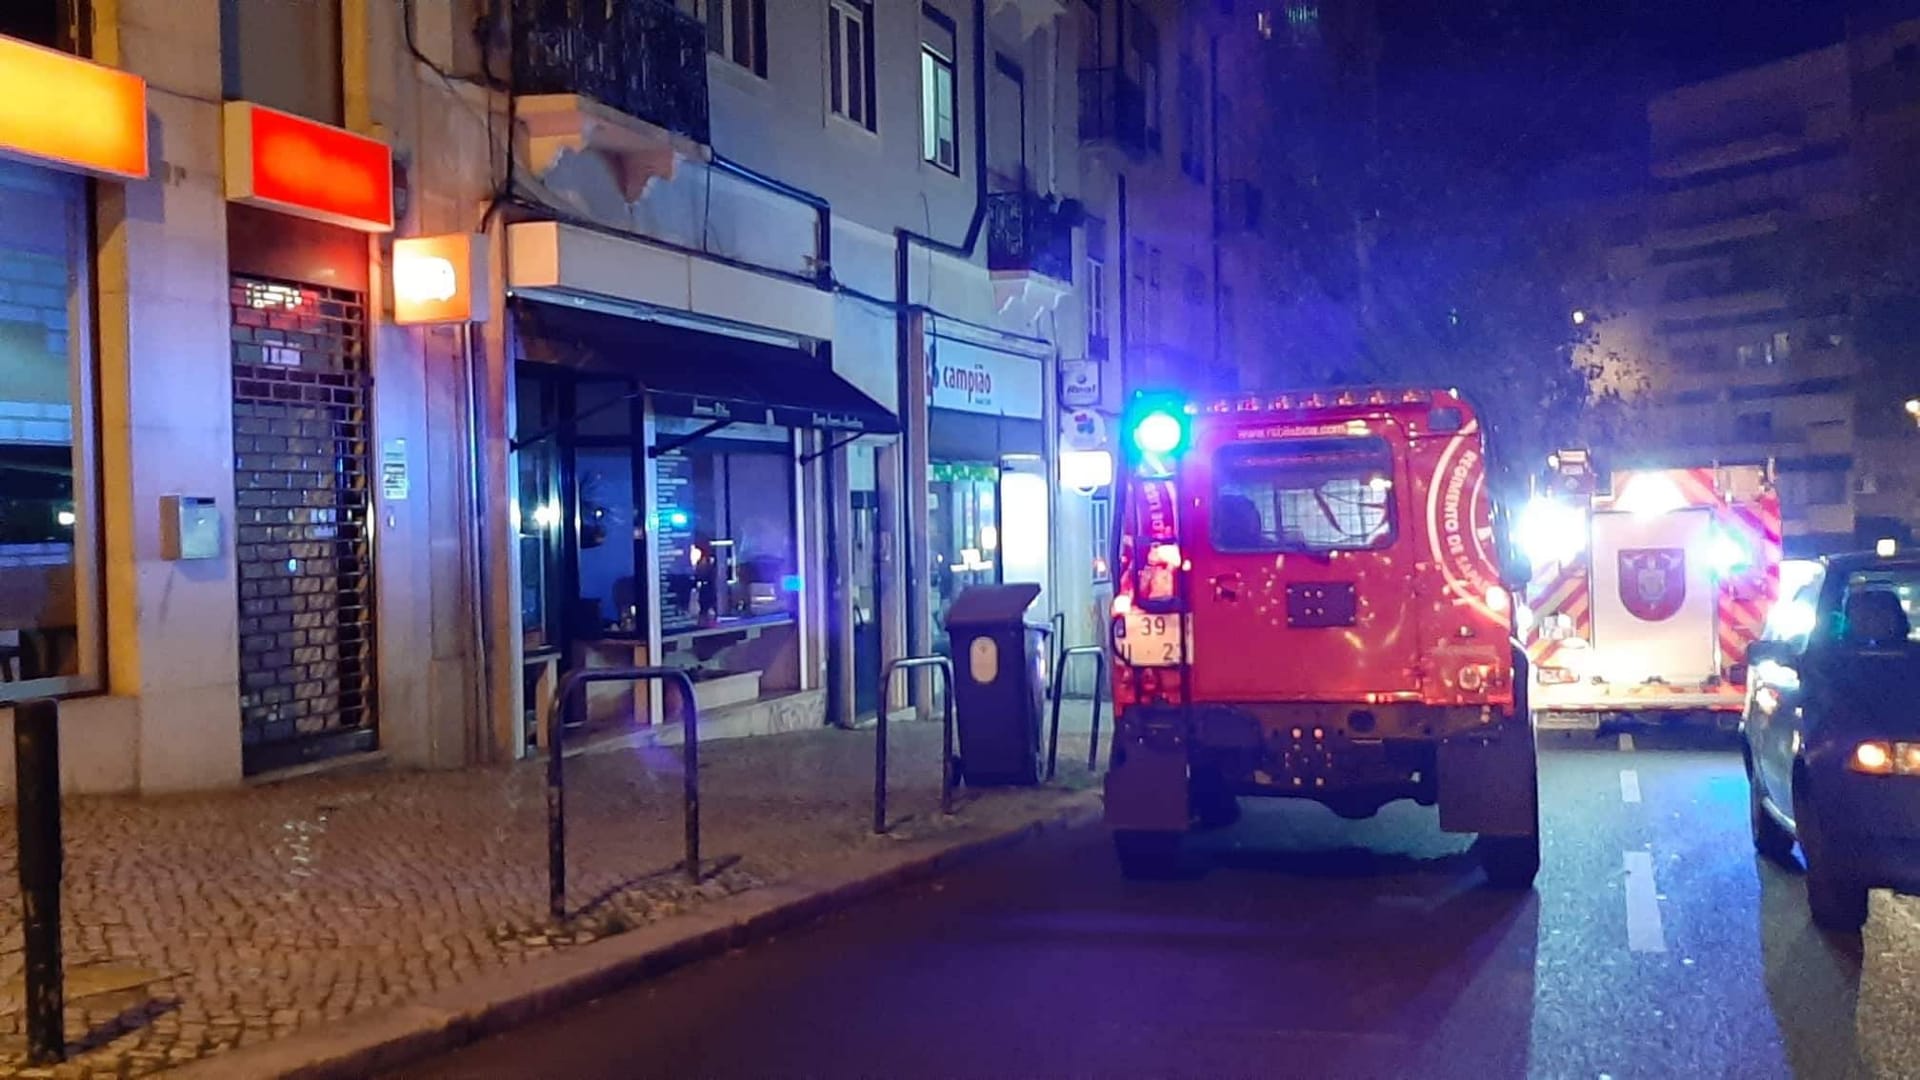 Incêndio deflagra em rua no centro de Lisboa